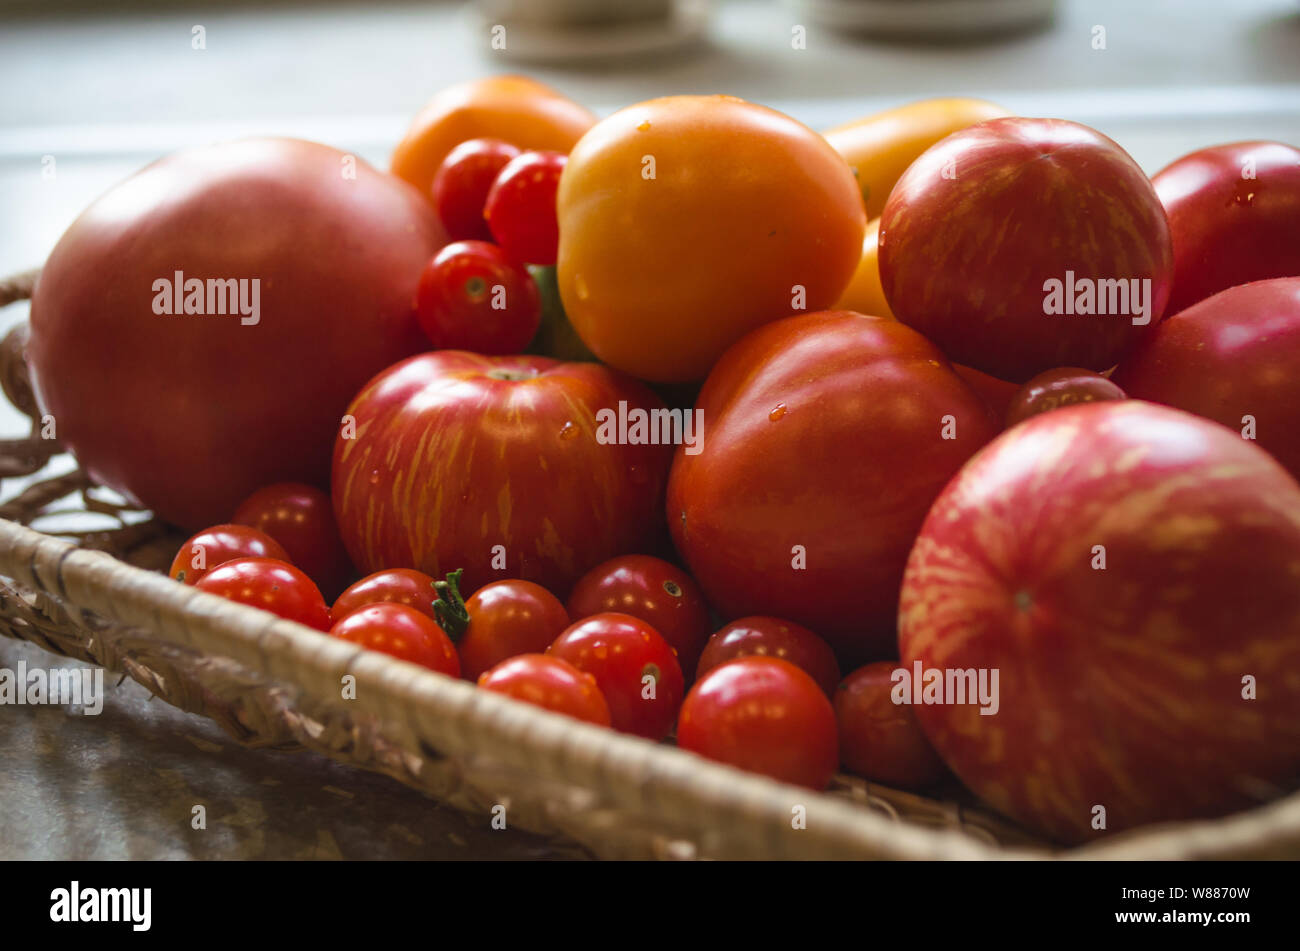 Close up appena raccolto dal giardino di pomodori. Diversi tipi di pomodori su una piastra - Pomodori ciliegia, rosso, arancione pomodori. Foto Stock